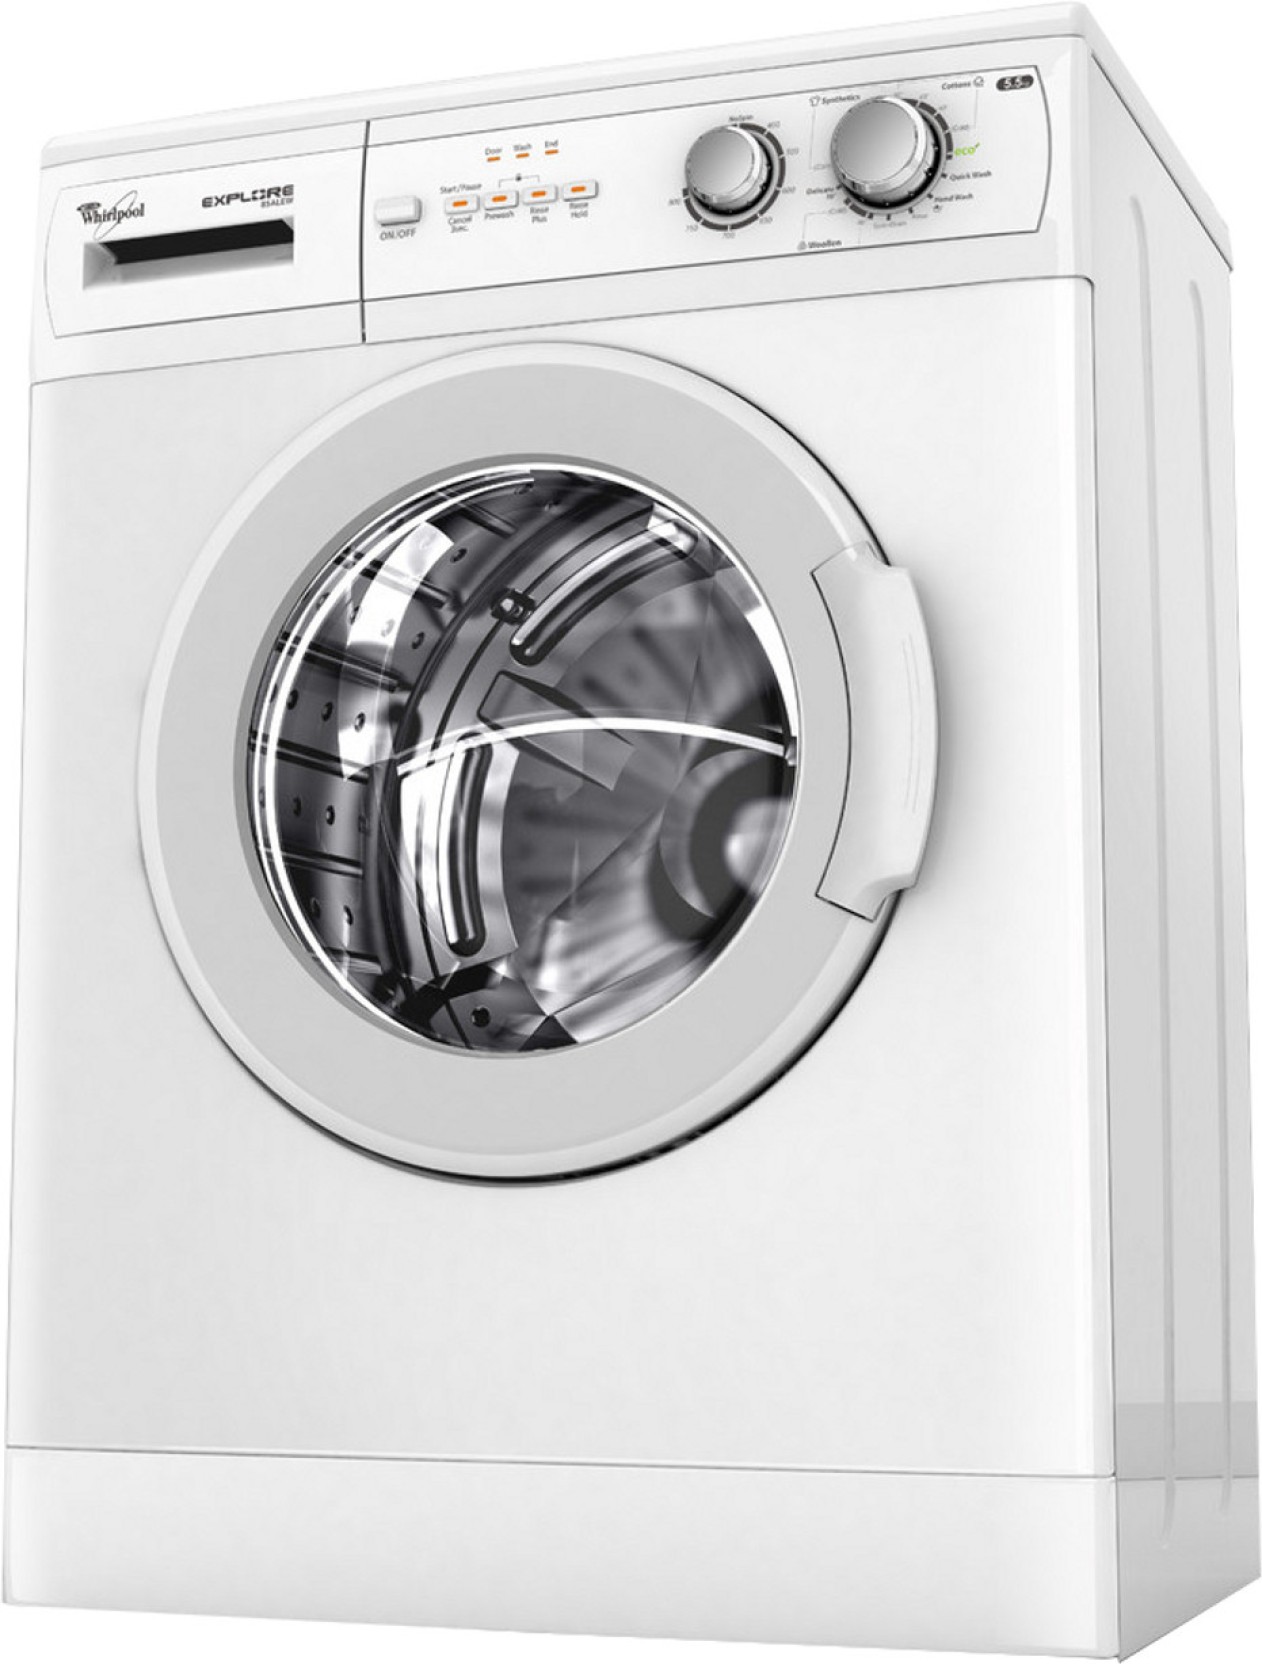 whirlpool washing machine